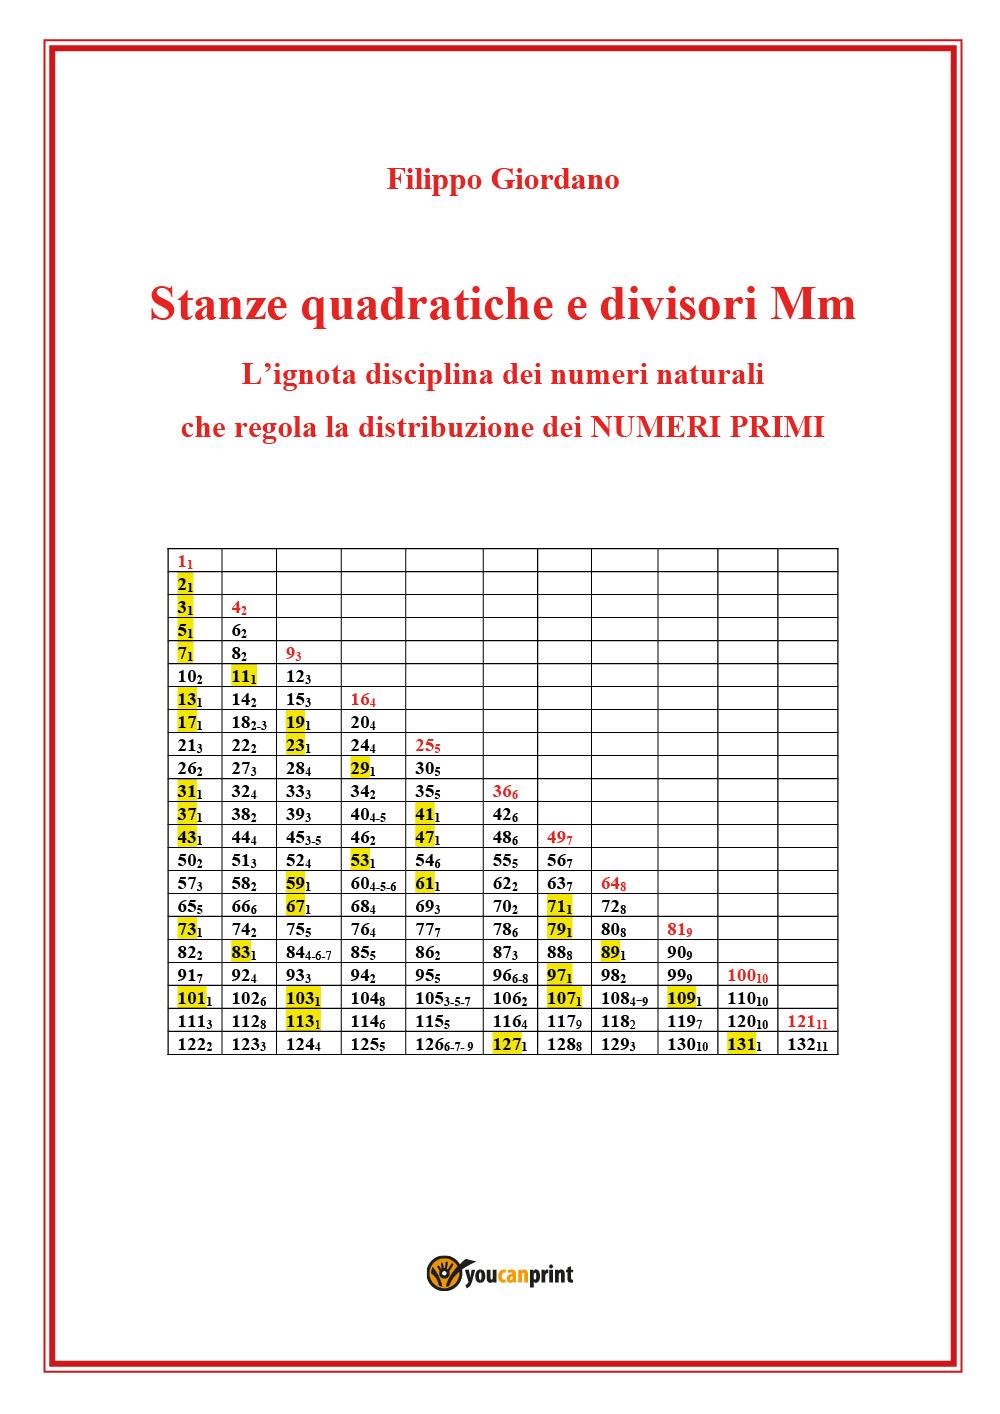 Stanze quadratiche e divisori Mm, la disciplina dei numeri naturali che regola la  distribuzione dei numeri primi